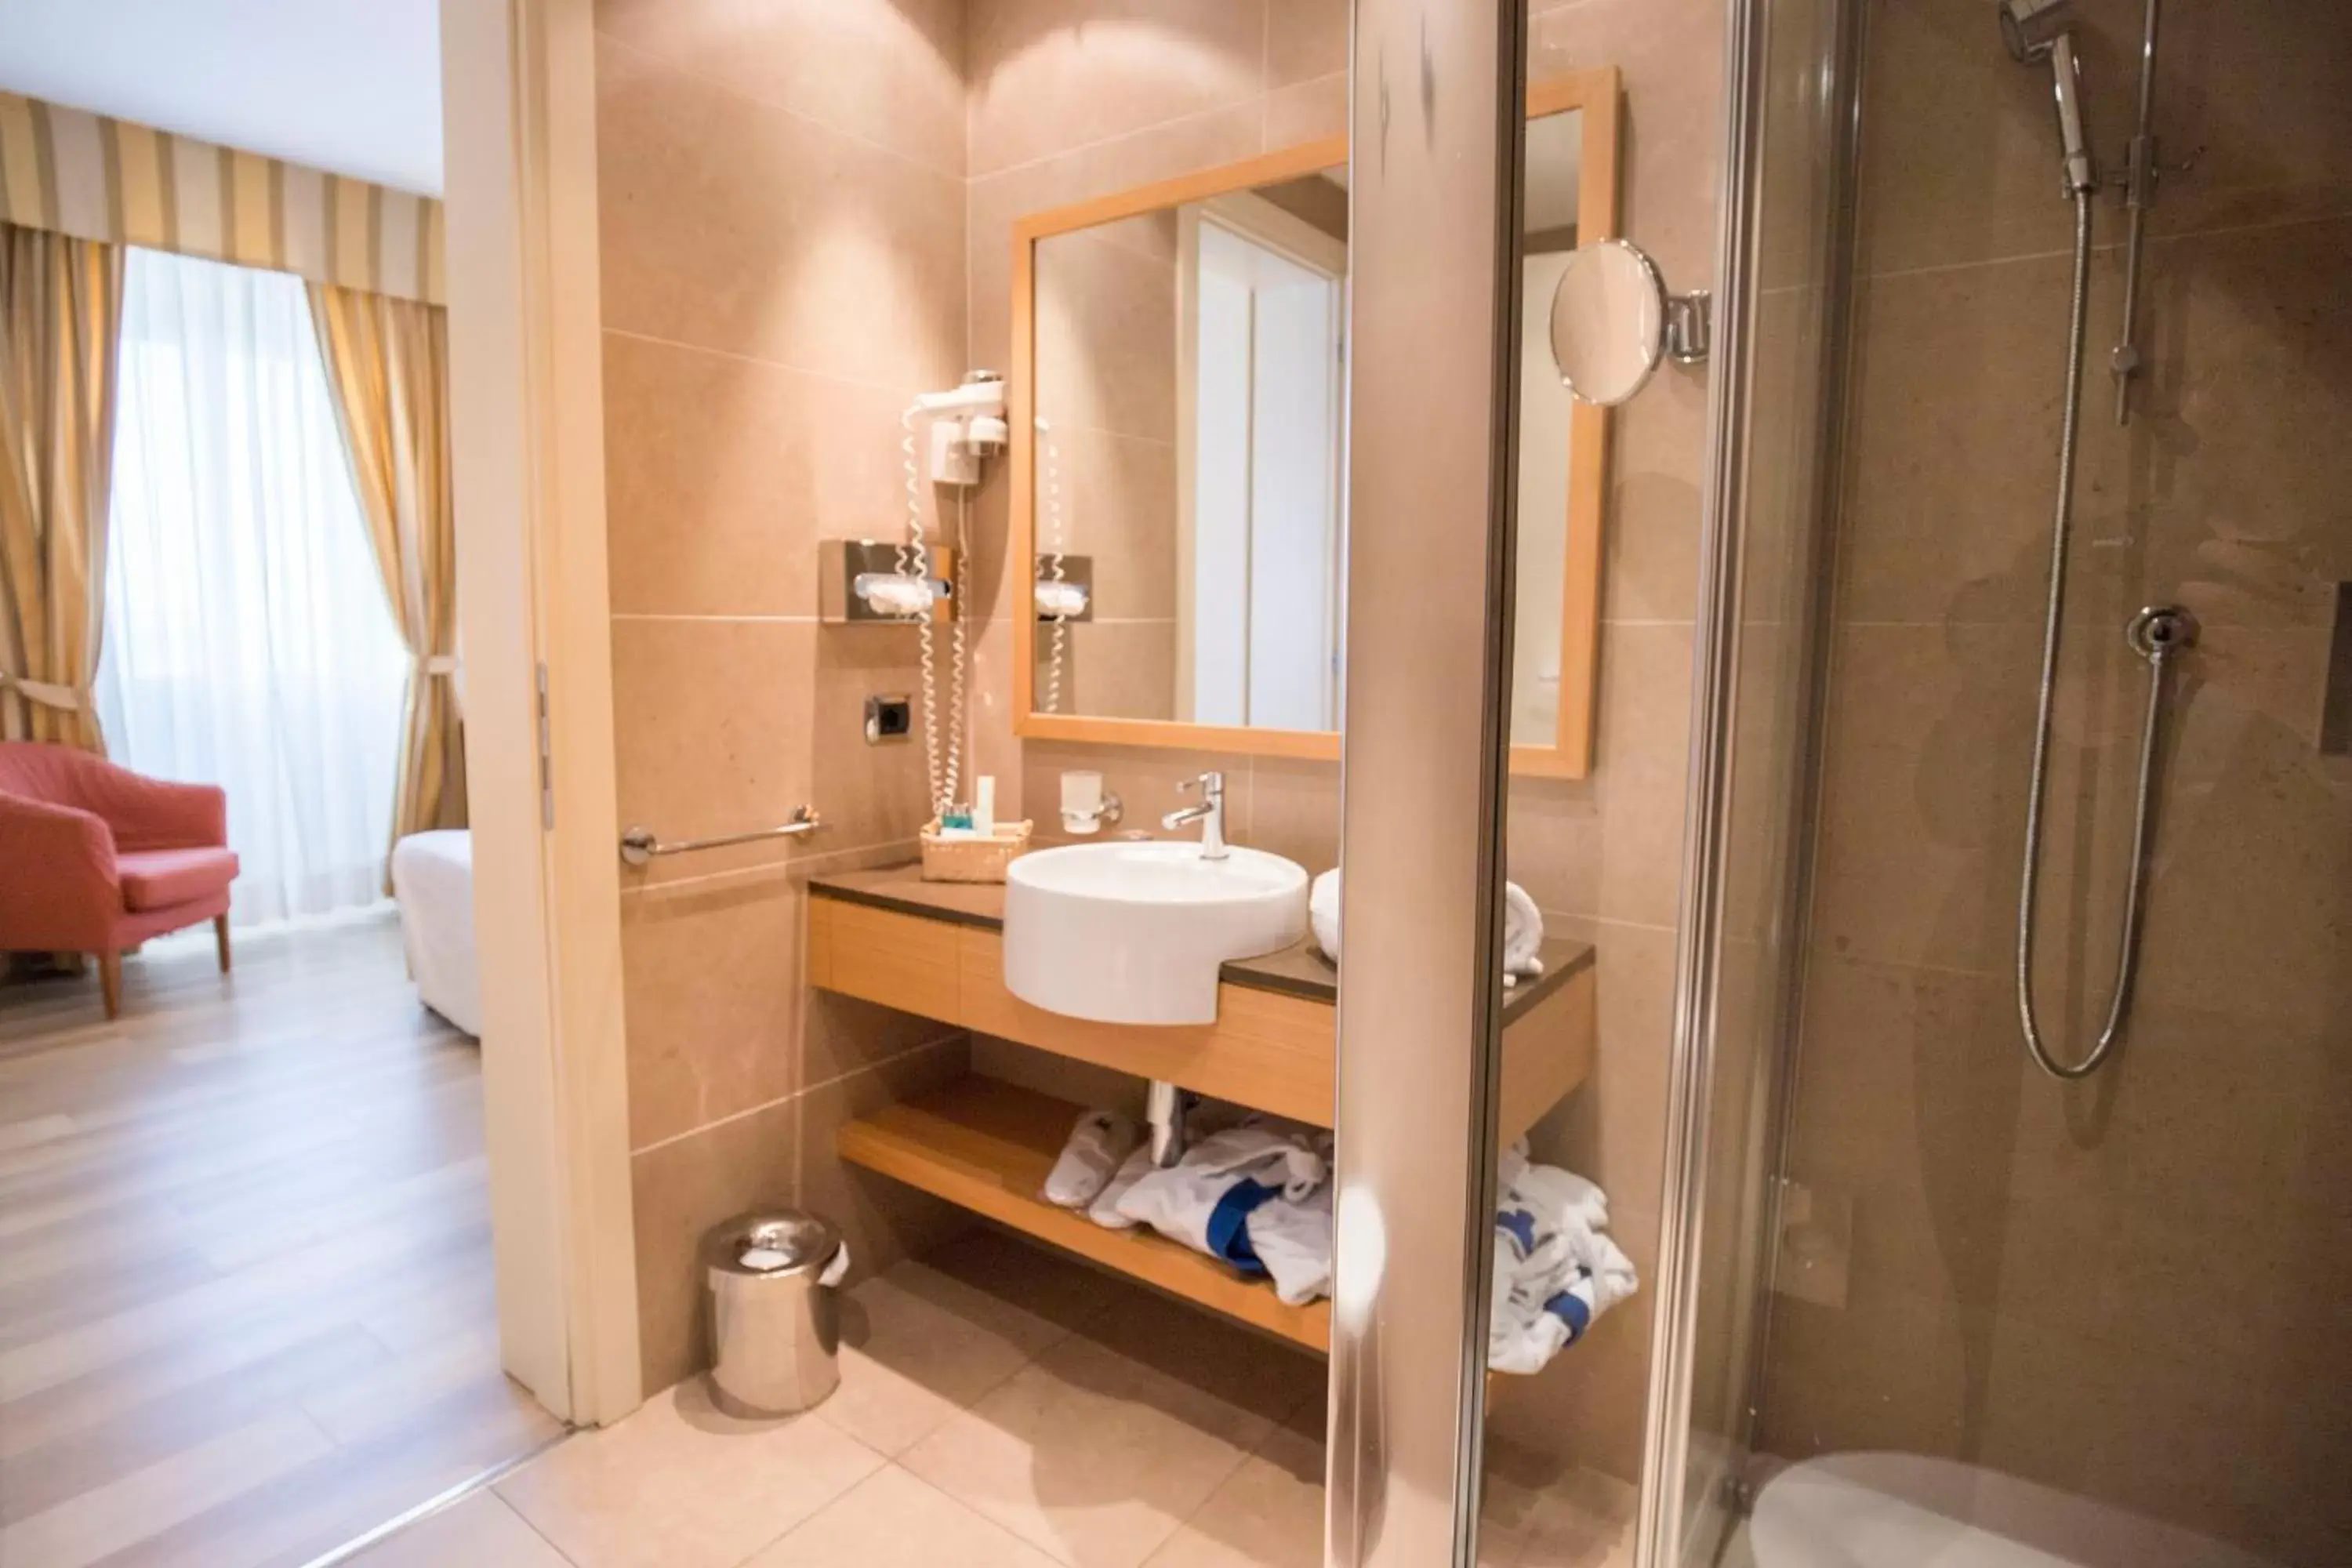 Bathroom in Hotel Sirmione